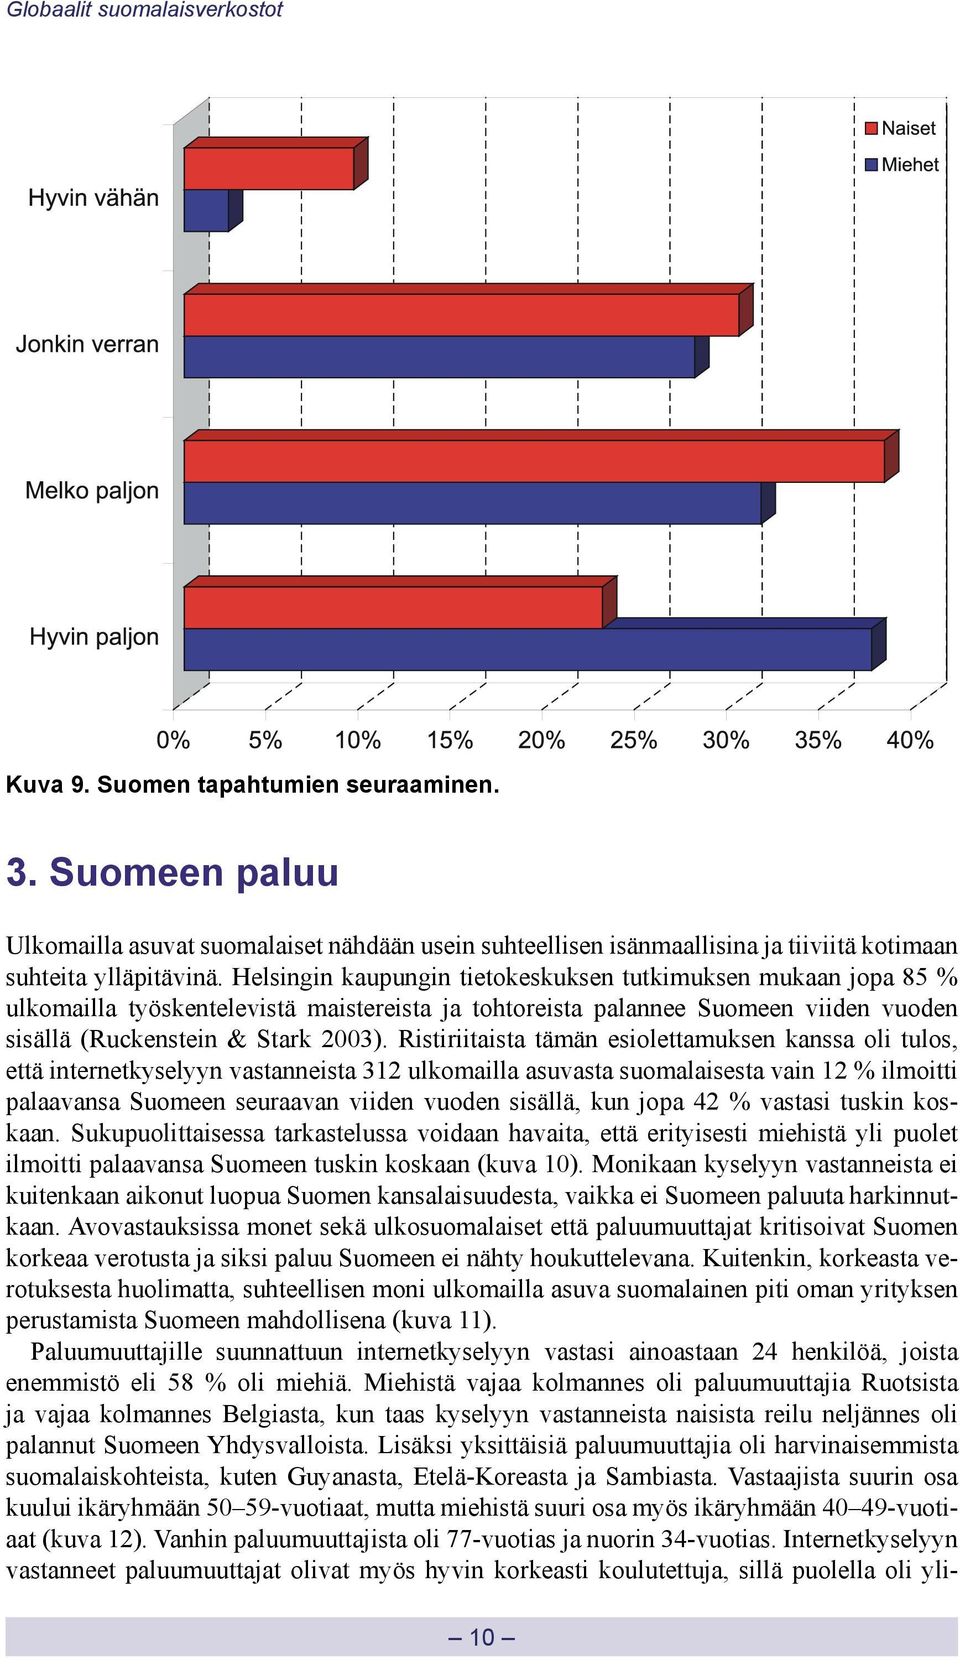 Helsingin kaupungin tietokeskuksen tutkimuksen mukaan jopa 85 % ulkomailla työskentelevistä maistereista ja tohtoreista palannee Suomeen viiden vuoden sisällä (Ruckenstein & Stark 2003).